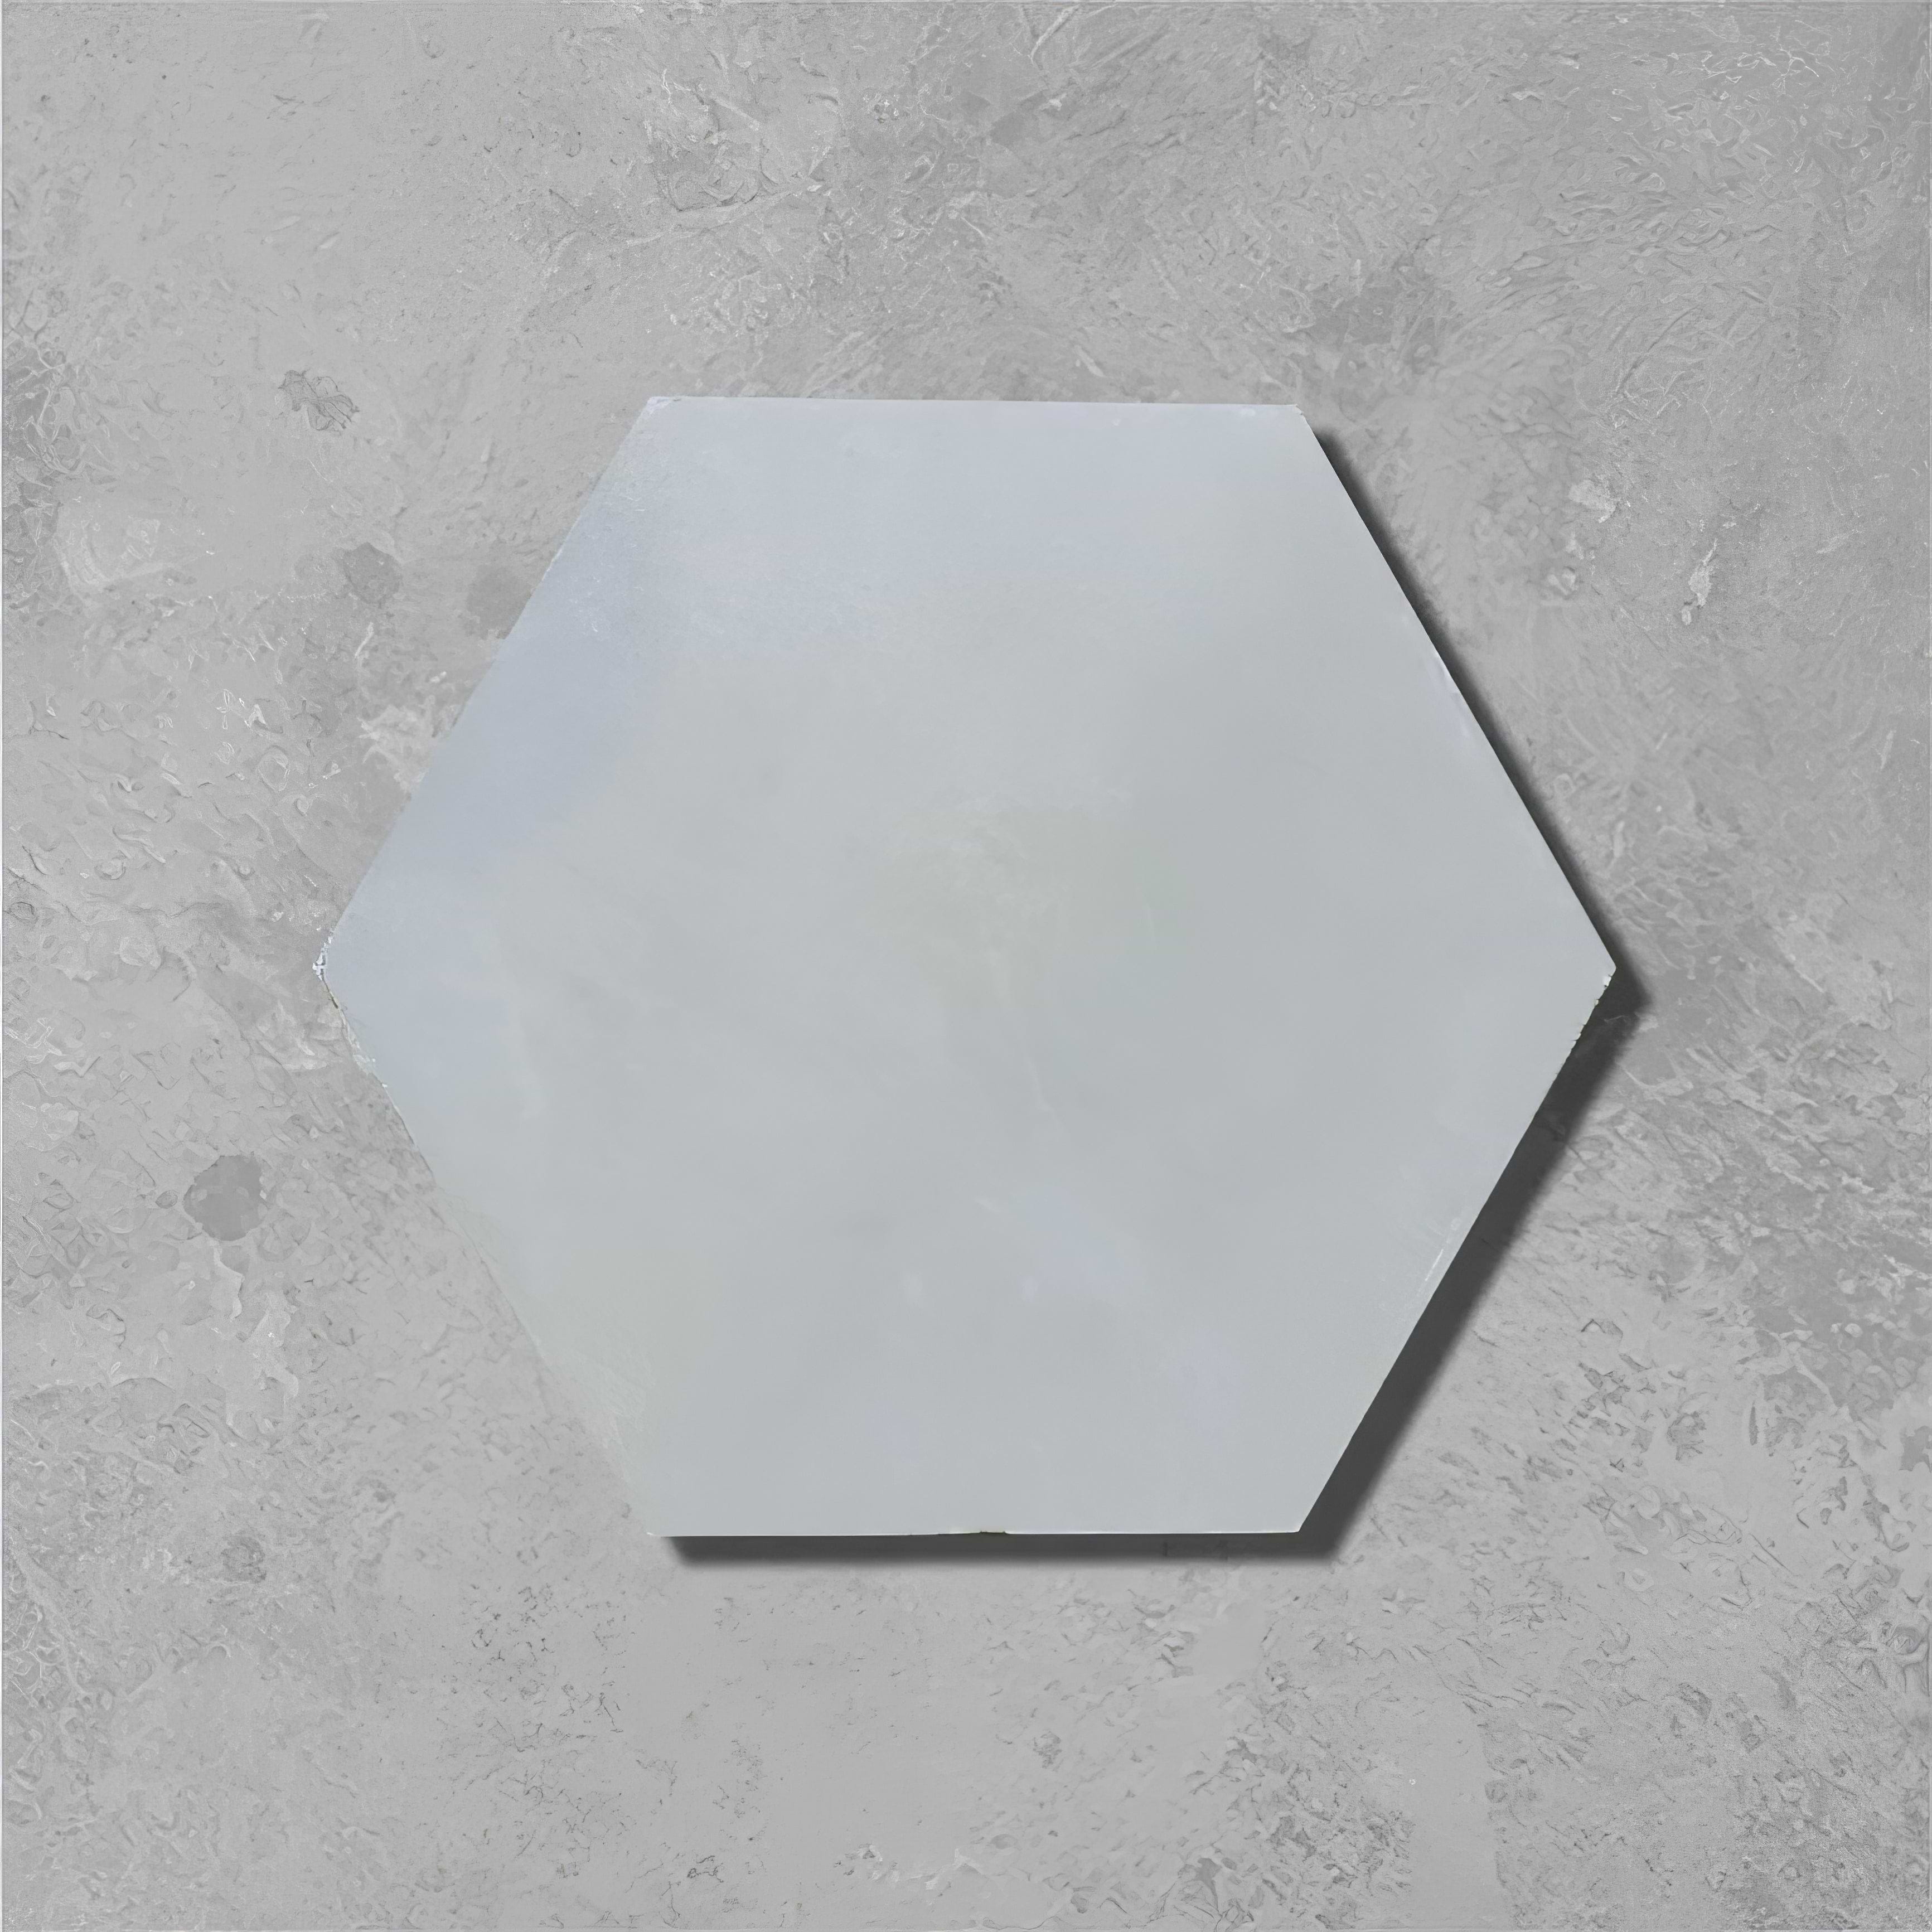 Little Greene French Grey Hexagonal Tile - Hyperion Tiles